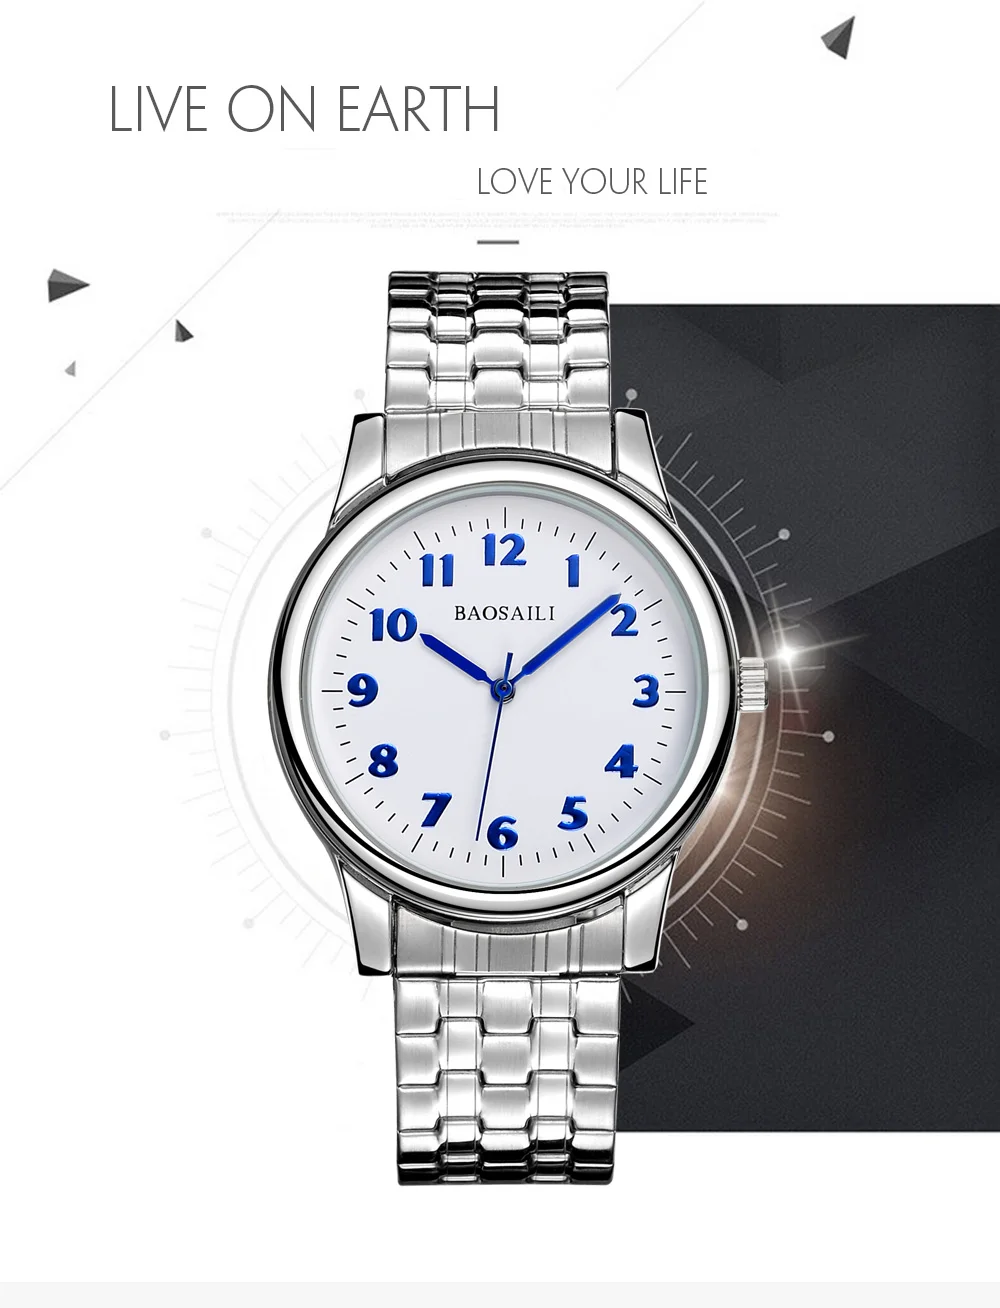 B-8204 часы с ремешком из нержавеющей стали, дизайнерское изображение для влюбленных, часы с логотипом на заказ с вашим фото/именем/благословением